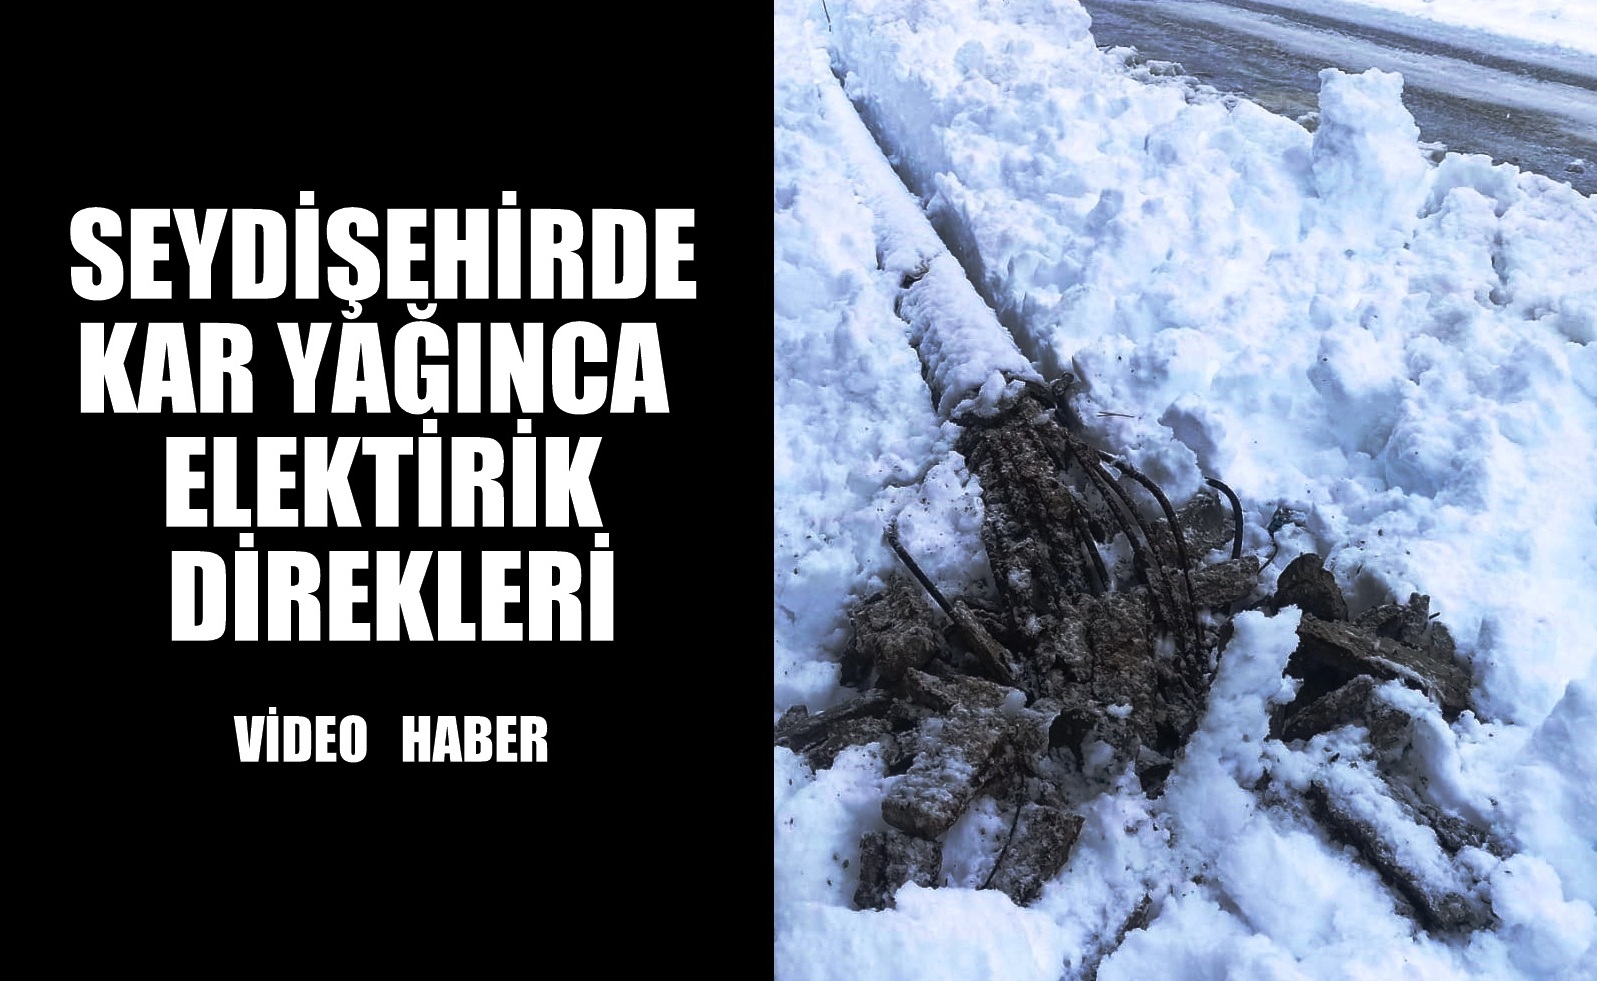 Seydişehir'e Kar yağınca   Elektrik  direkleri böyle oluyor VİDEOHABER